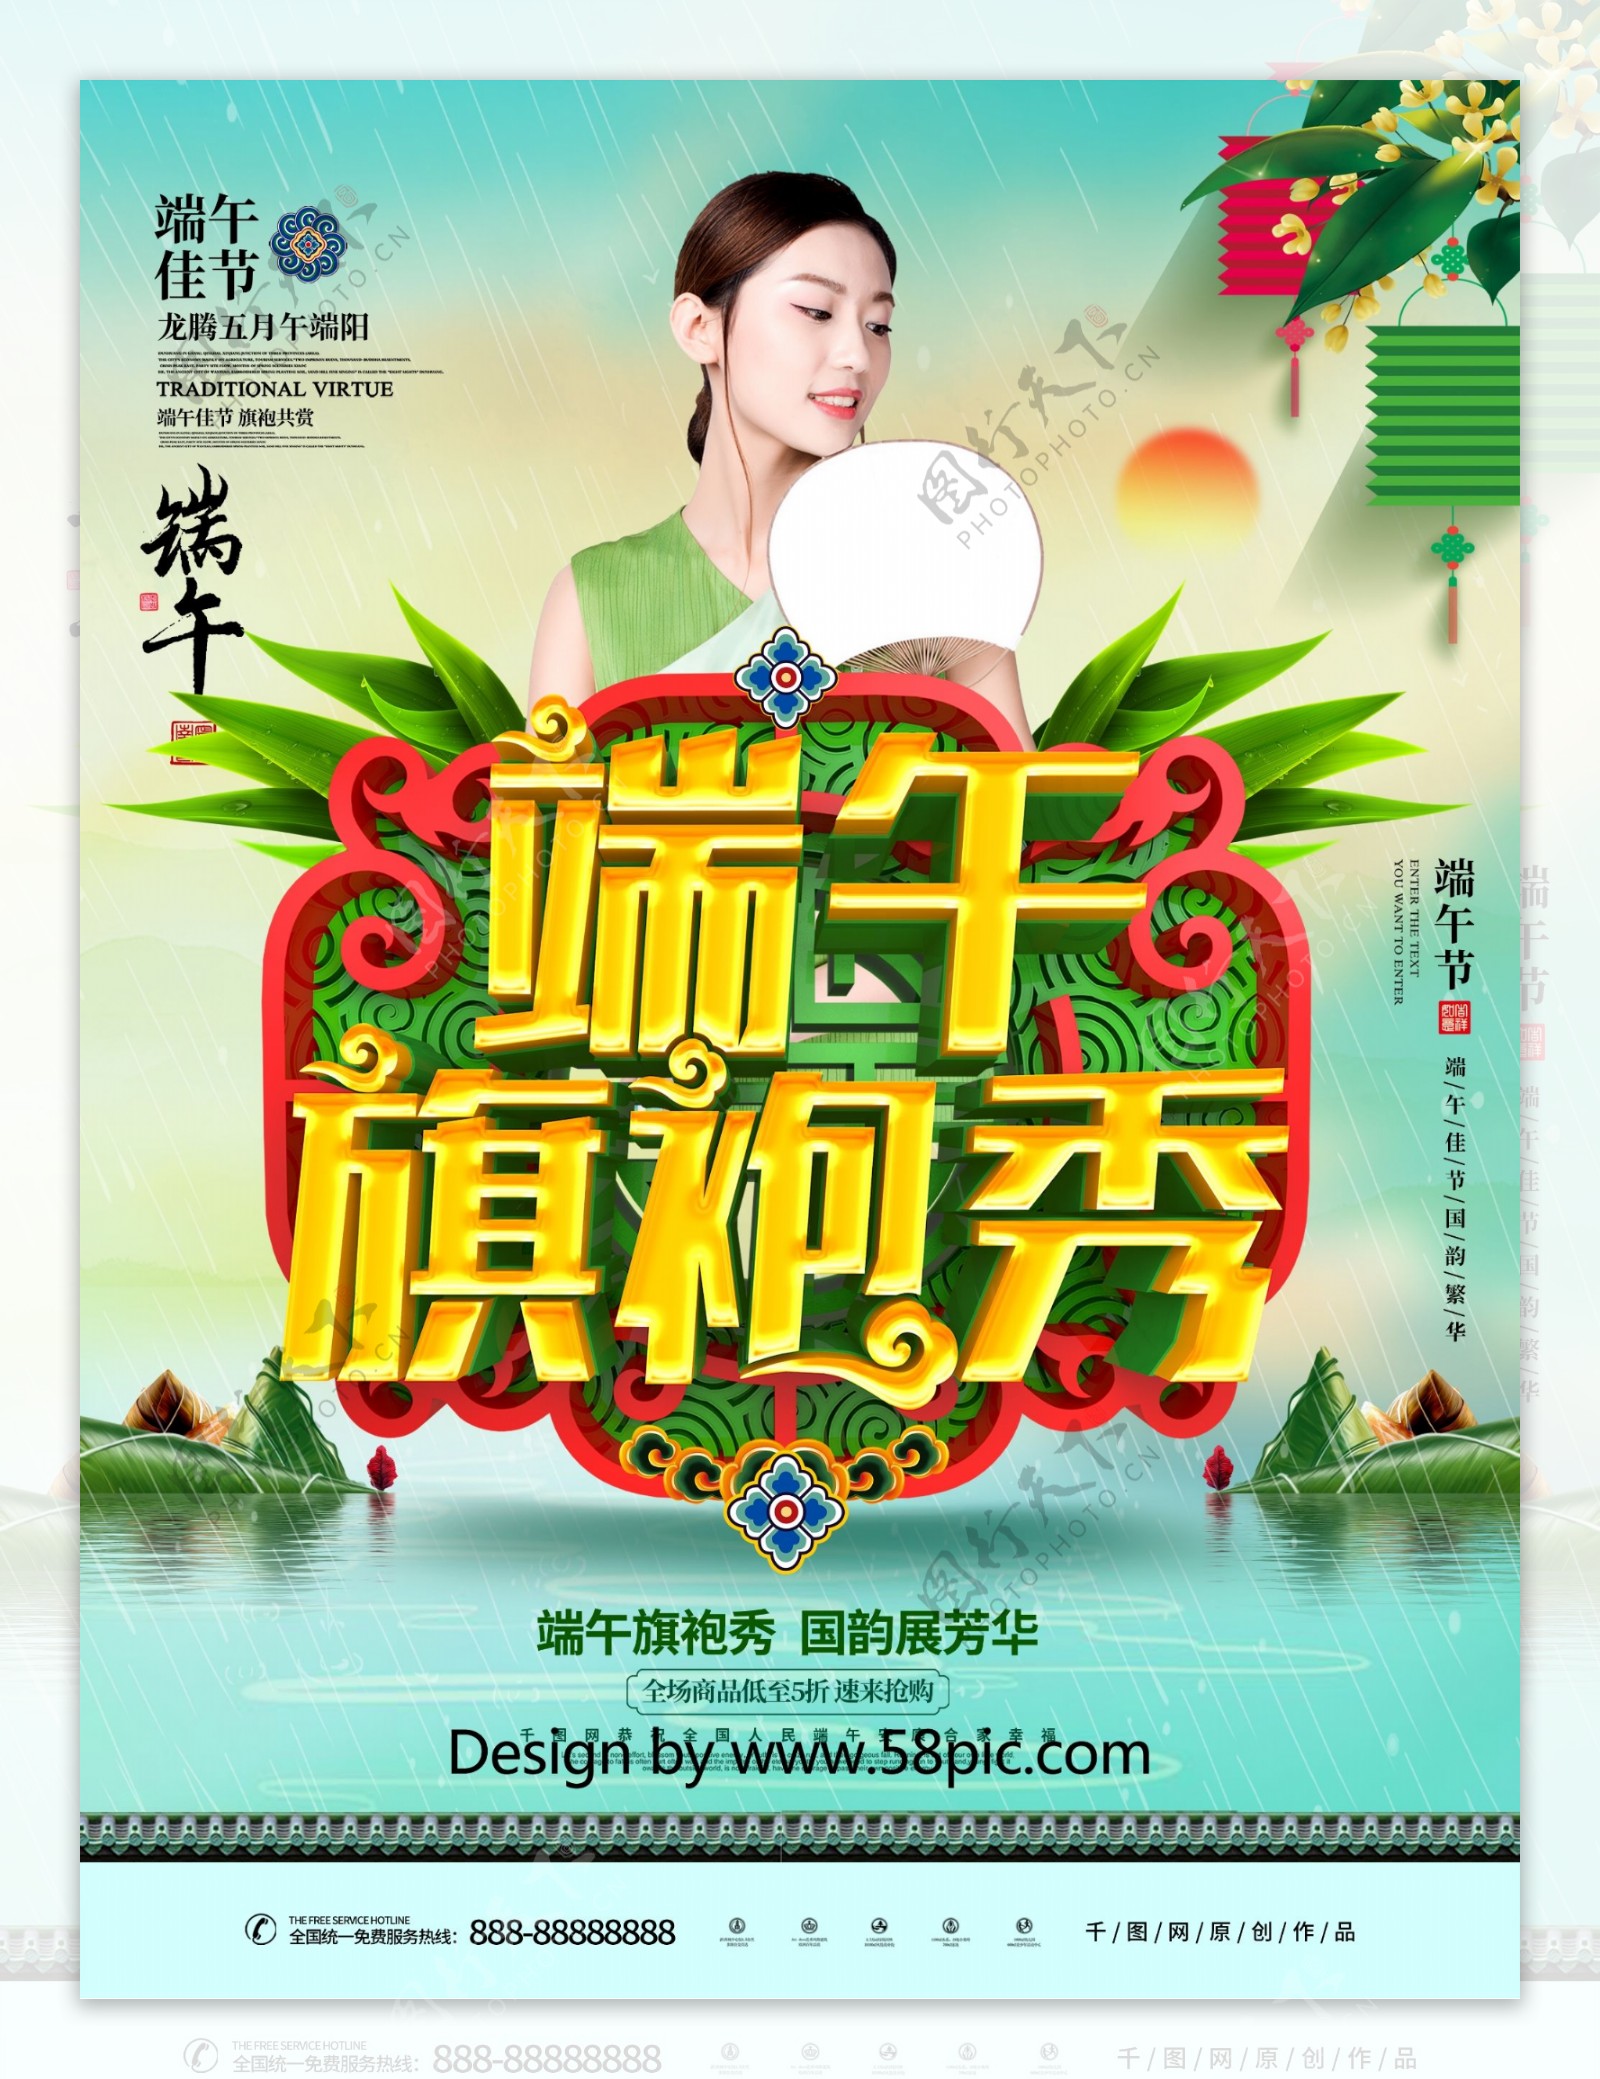 C4D创意中国风立体端午旗袍秀端午海报